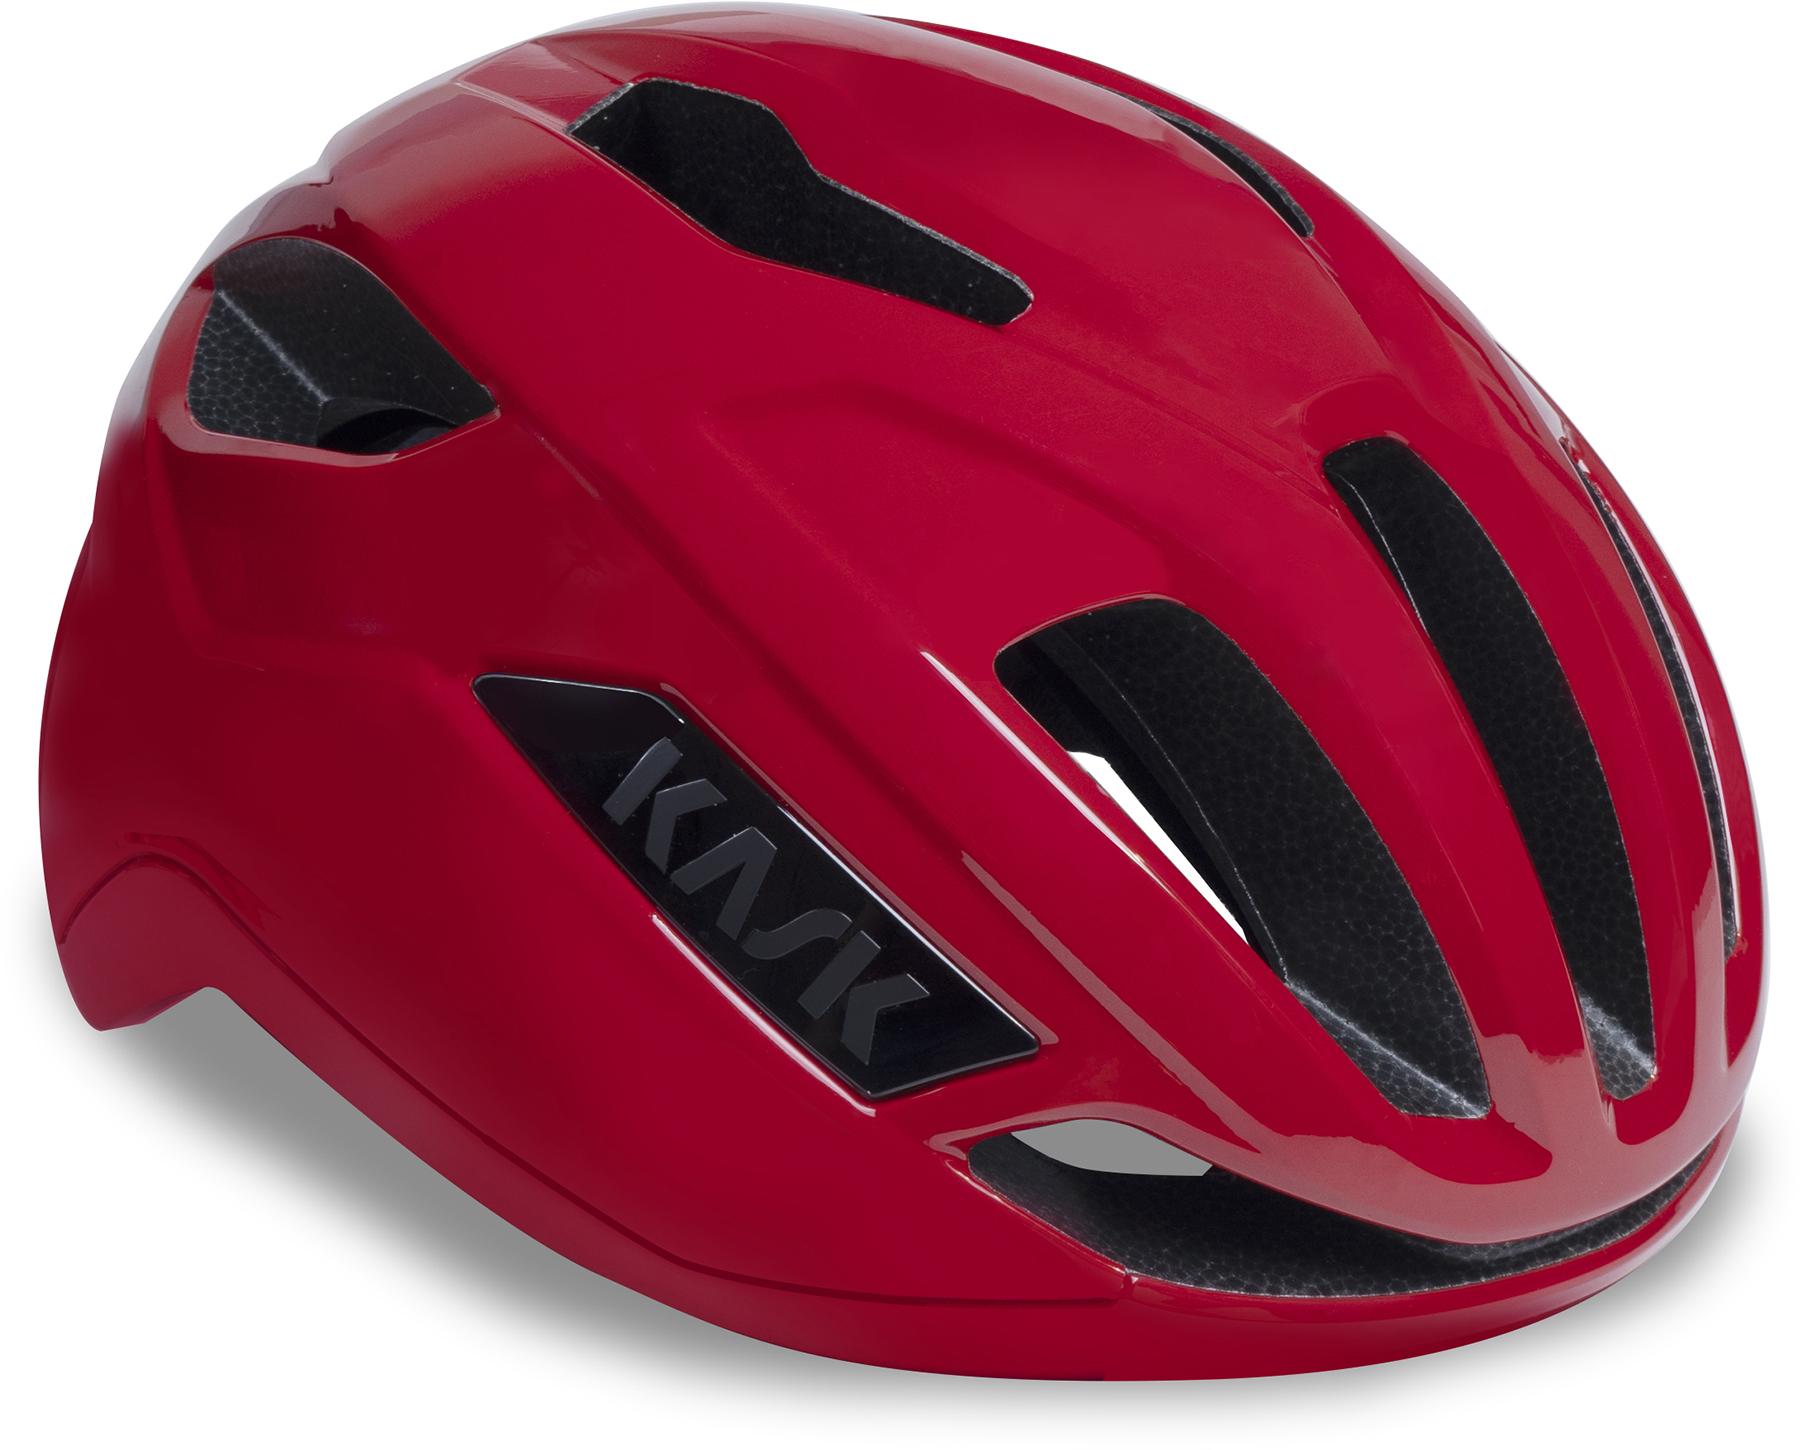 Kask Sintesi Helmet (wg11) - Red